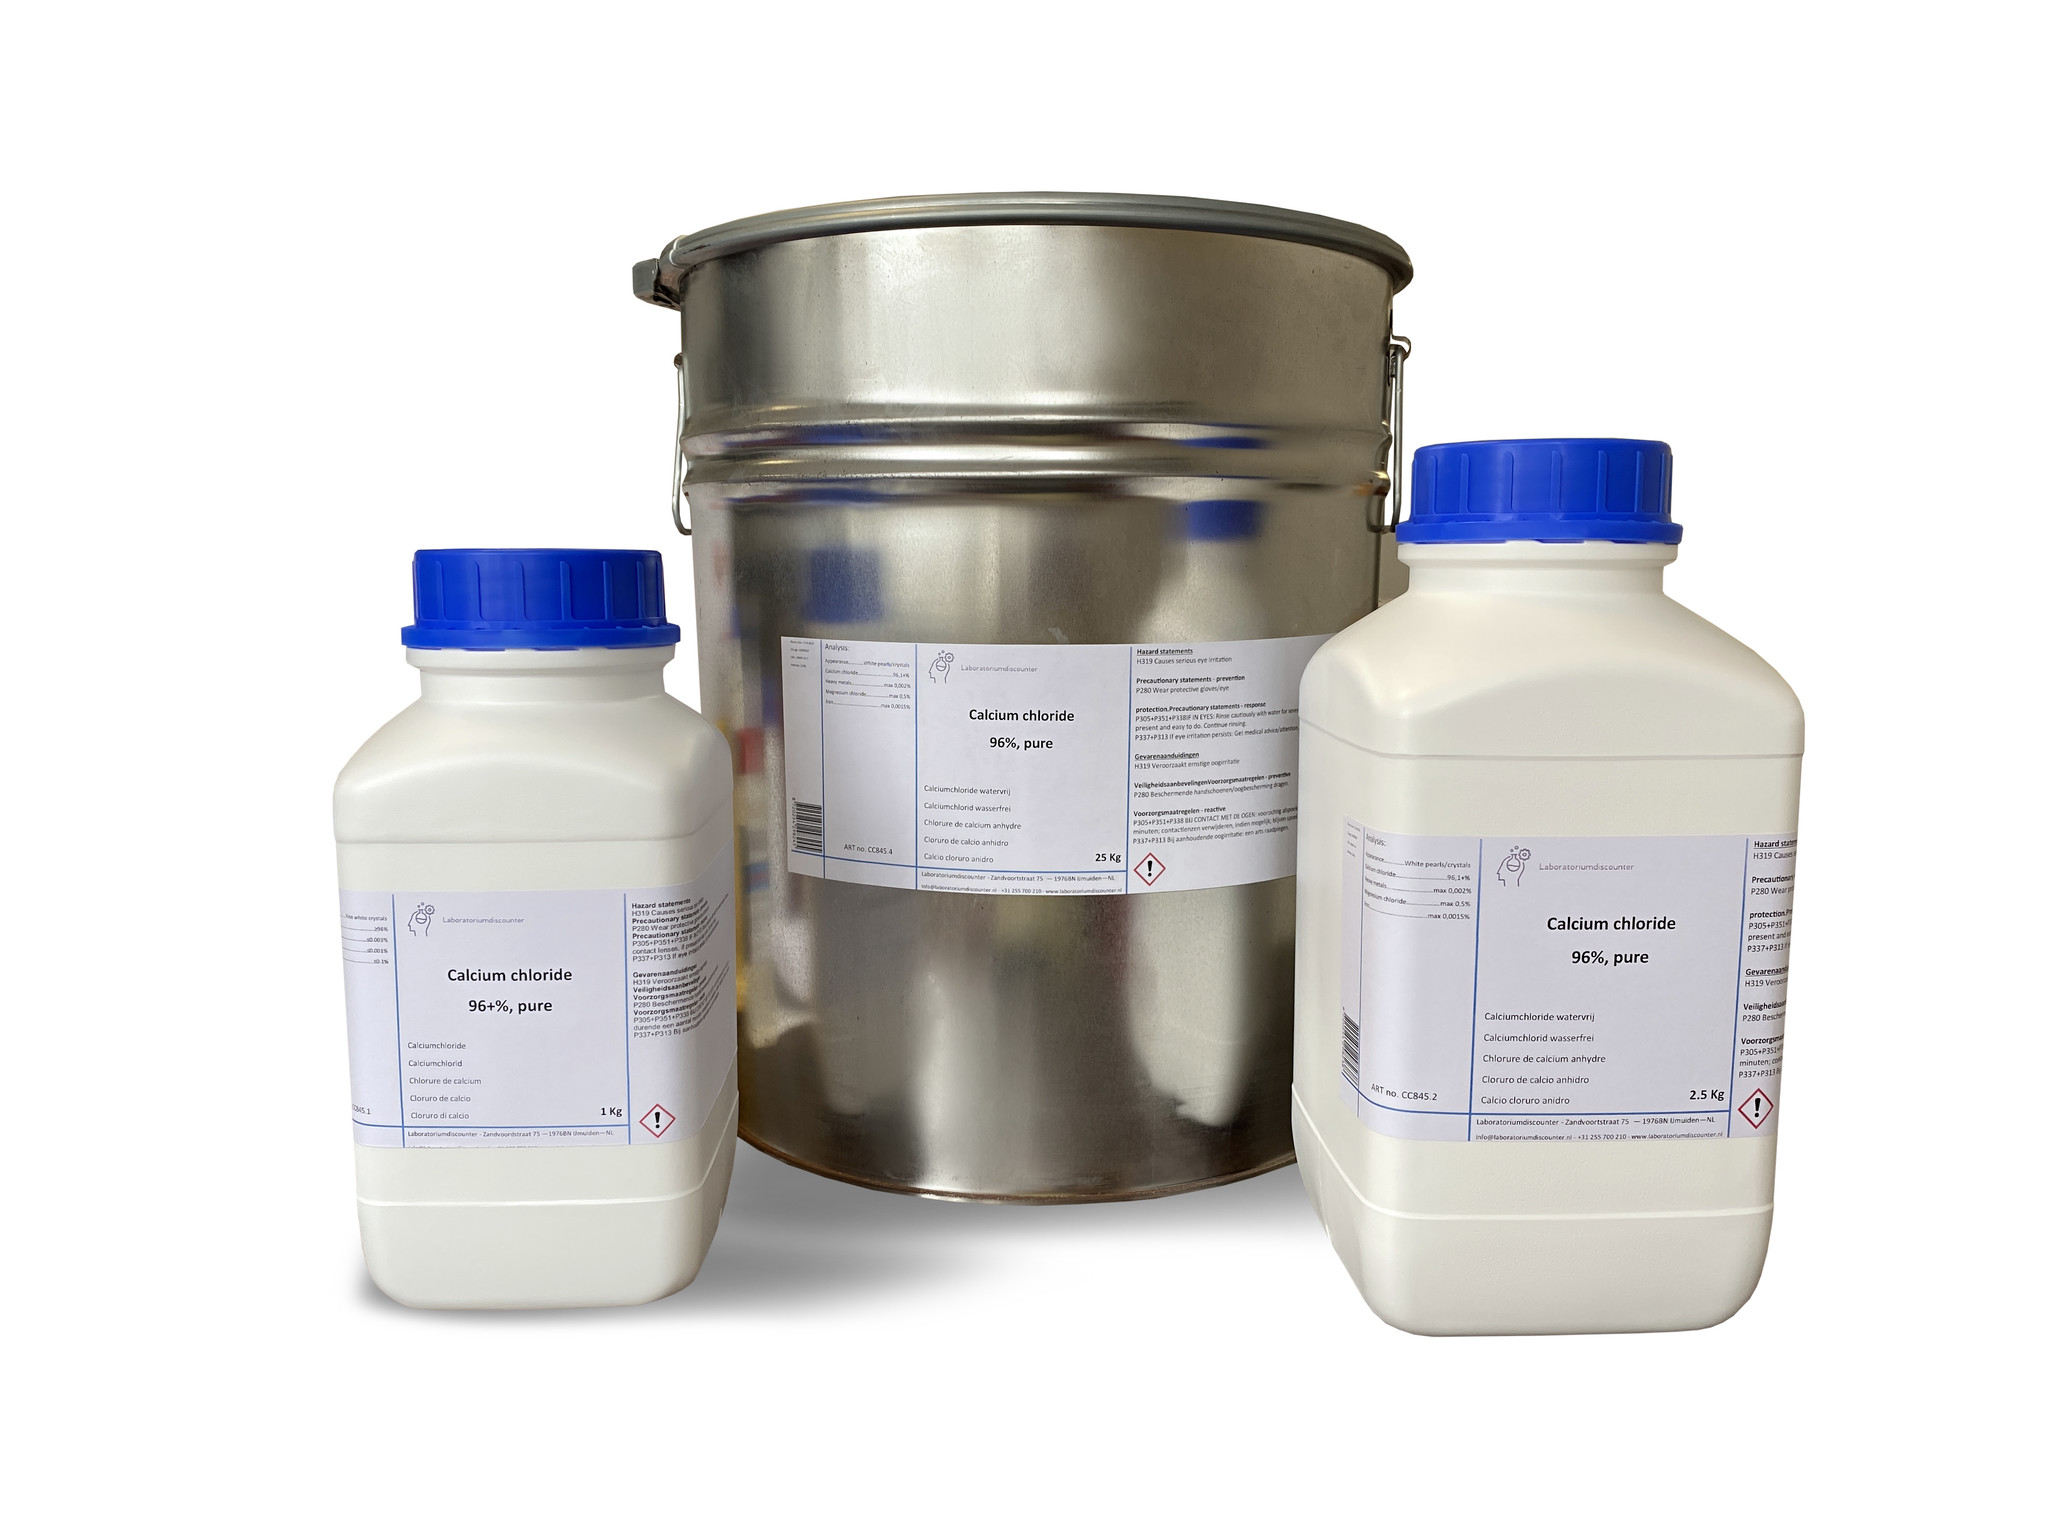 Acheter chlorure de calcium CAS 10043-52-4 ? - La meilleure qualité de  chlorure de calcium CAS 10043-52-4 à un prix abordable, disponible dans  différents emballages et délais de livraison rapides